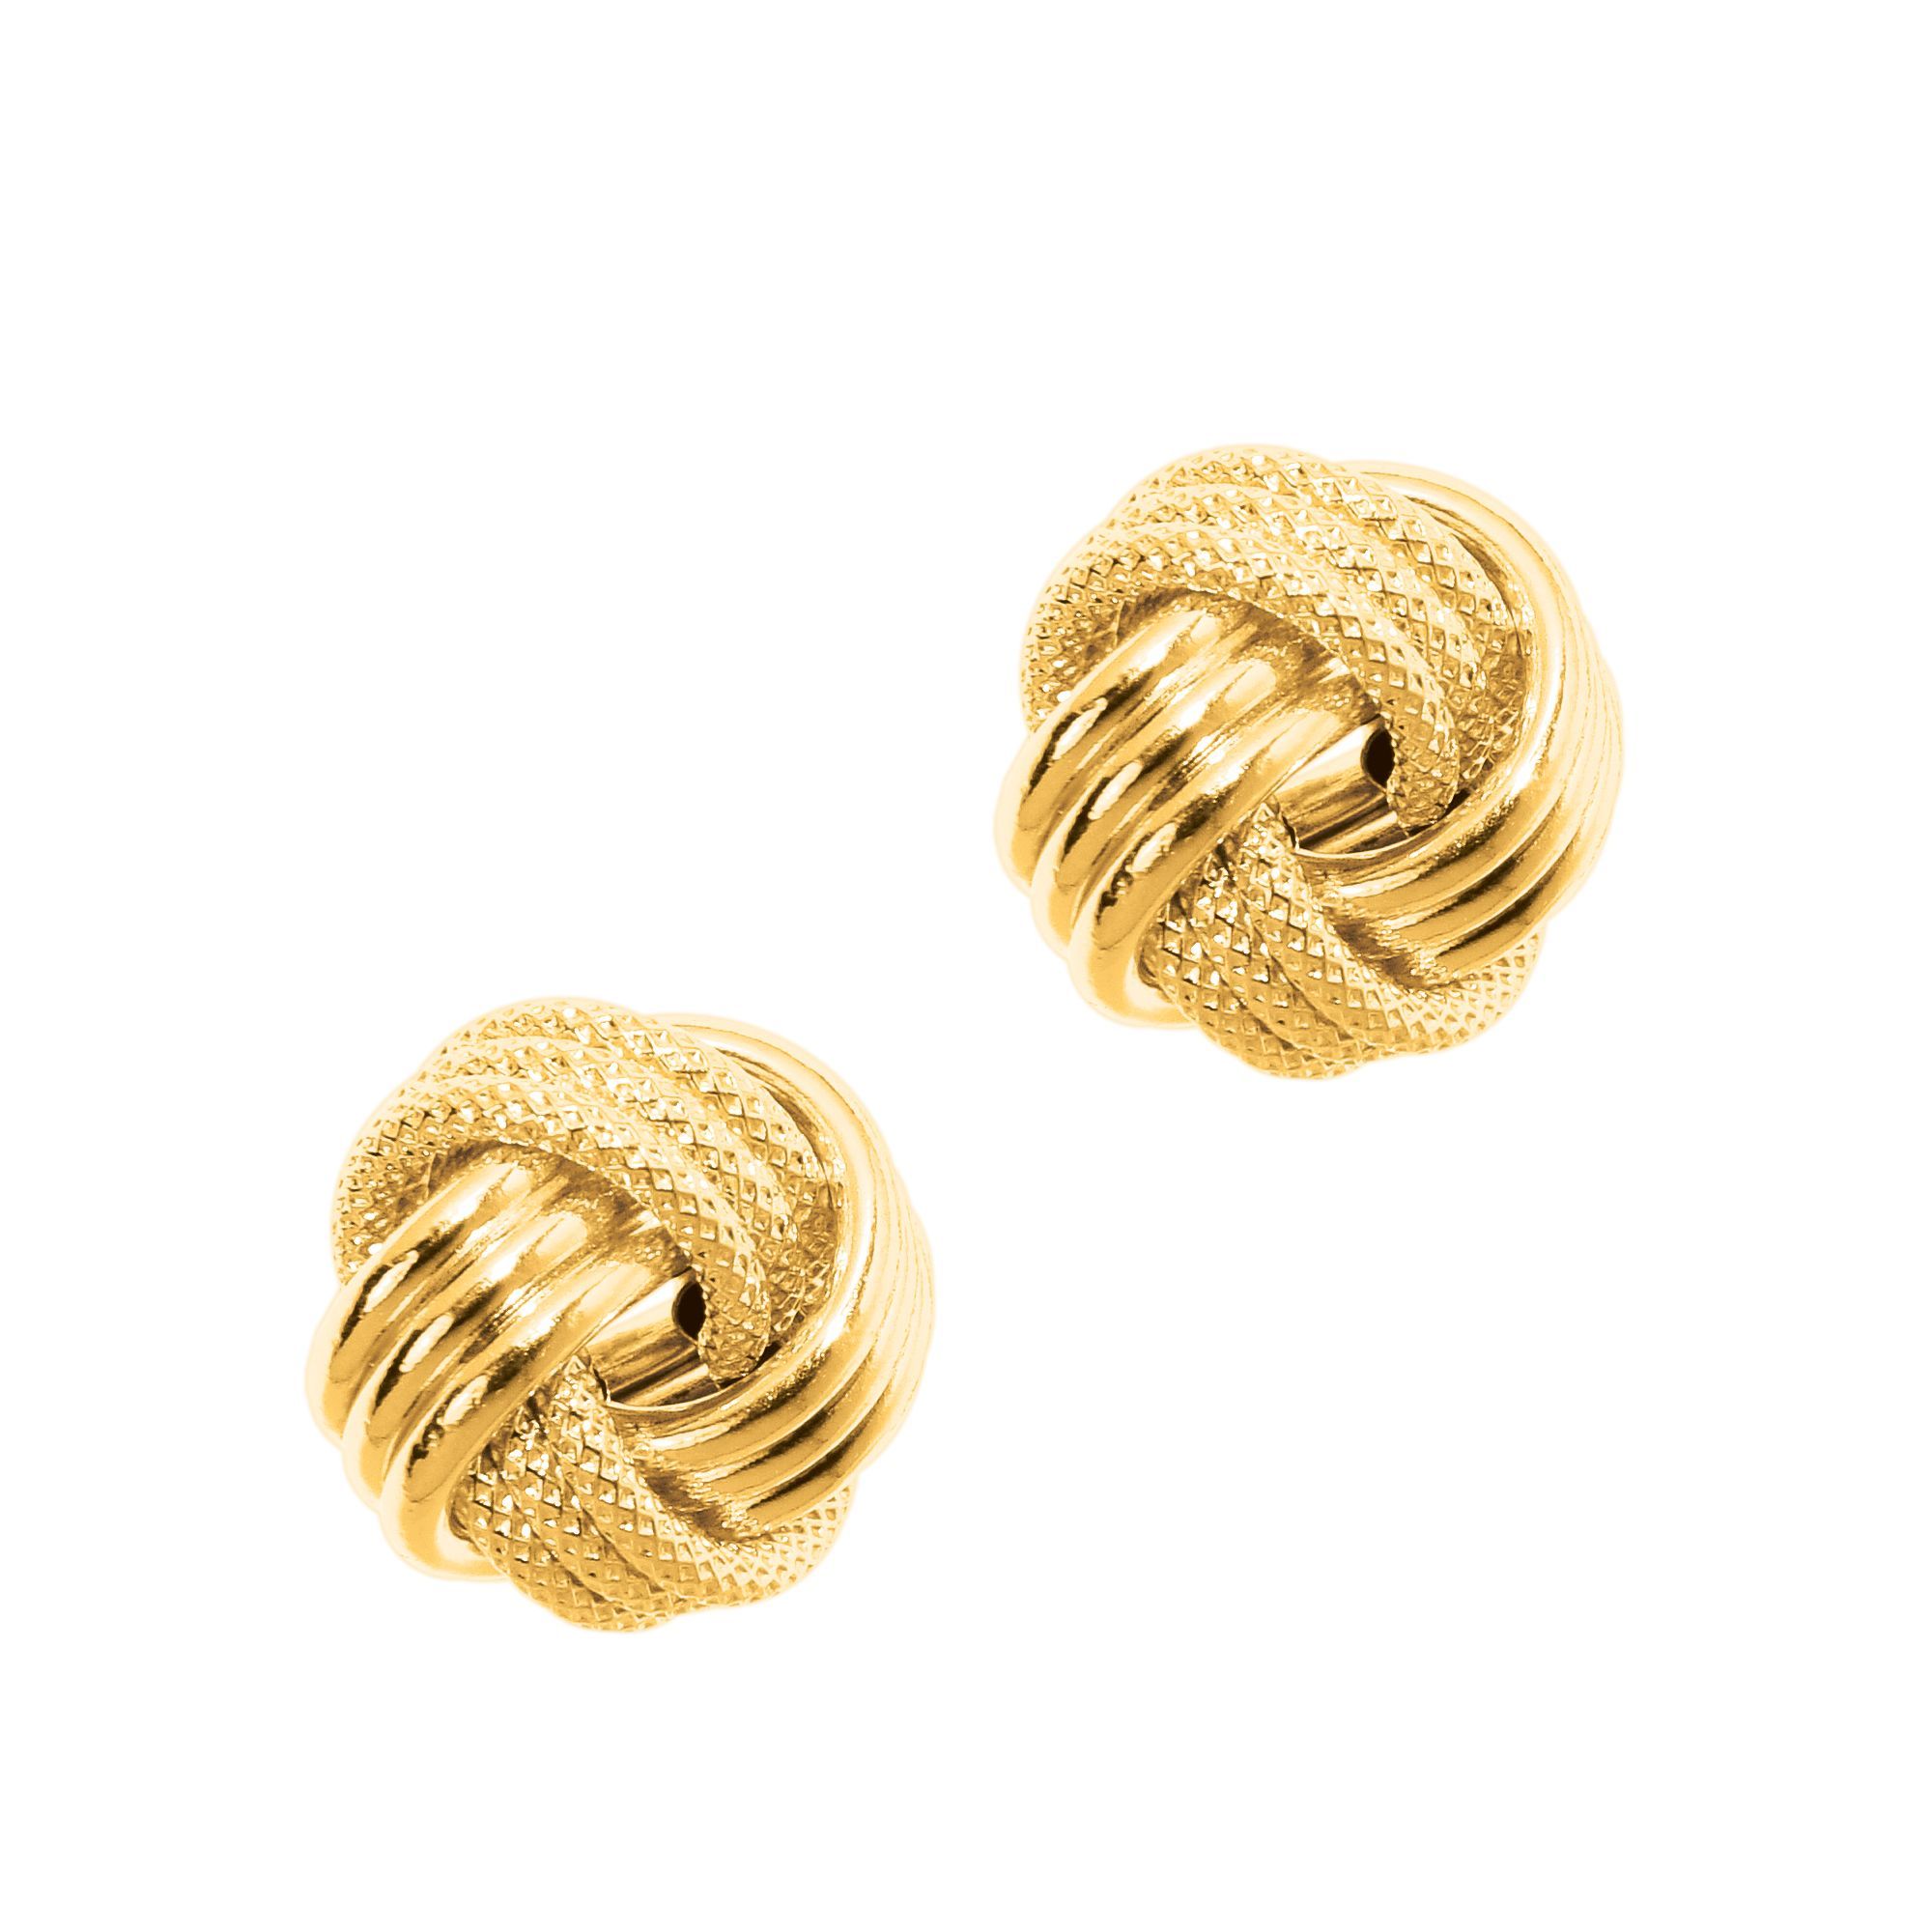 Golden Love Earrings - Gold/Clear